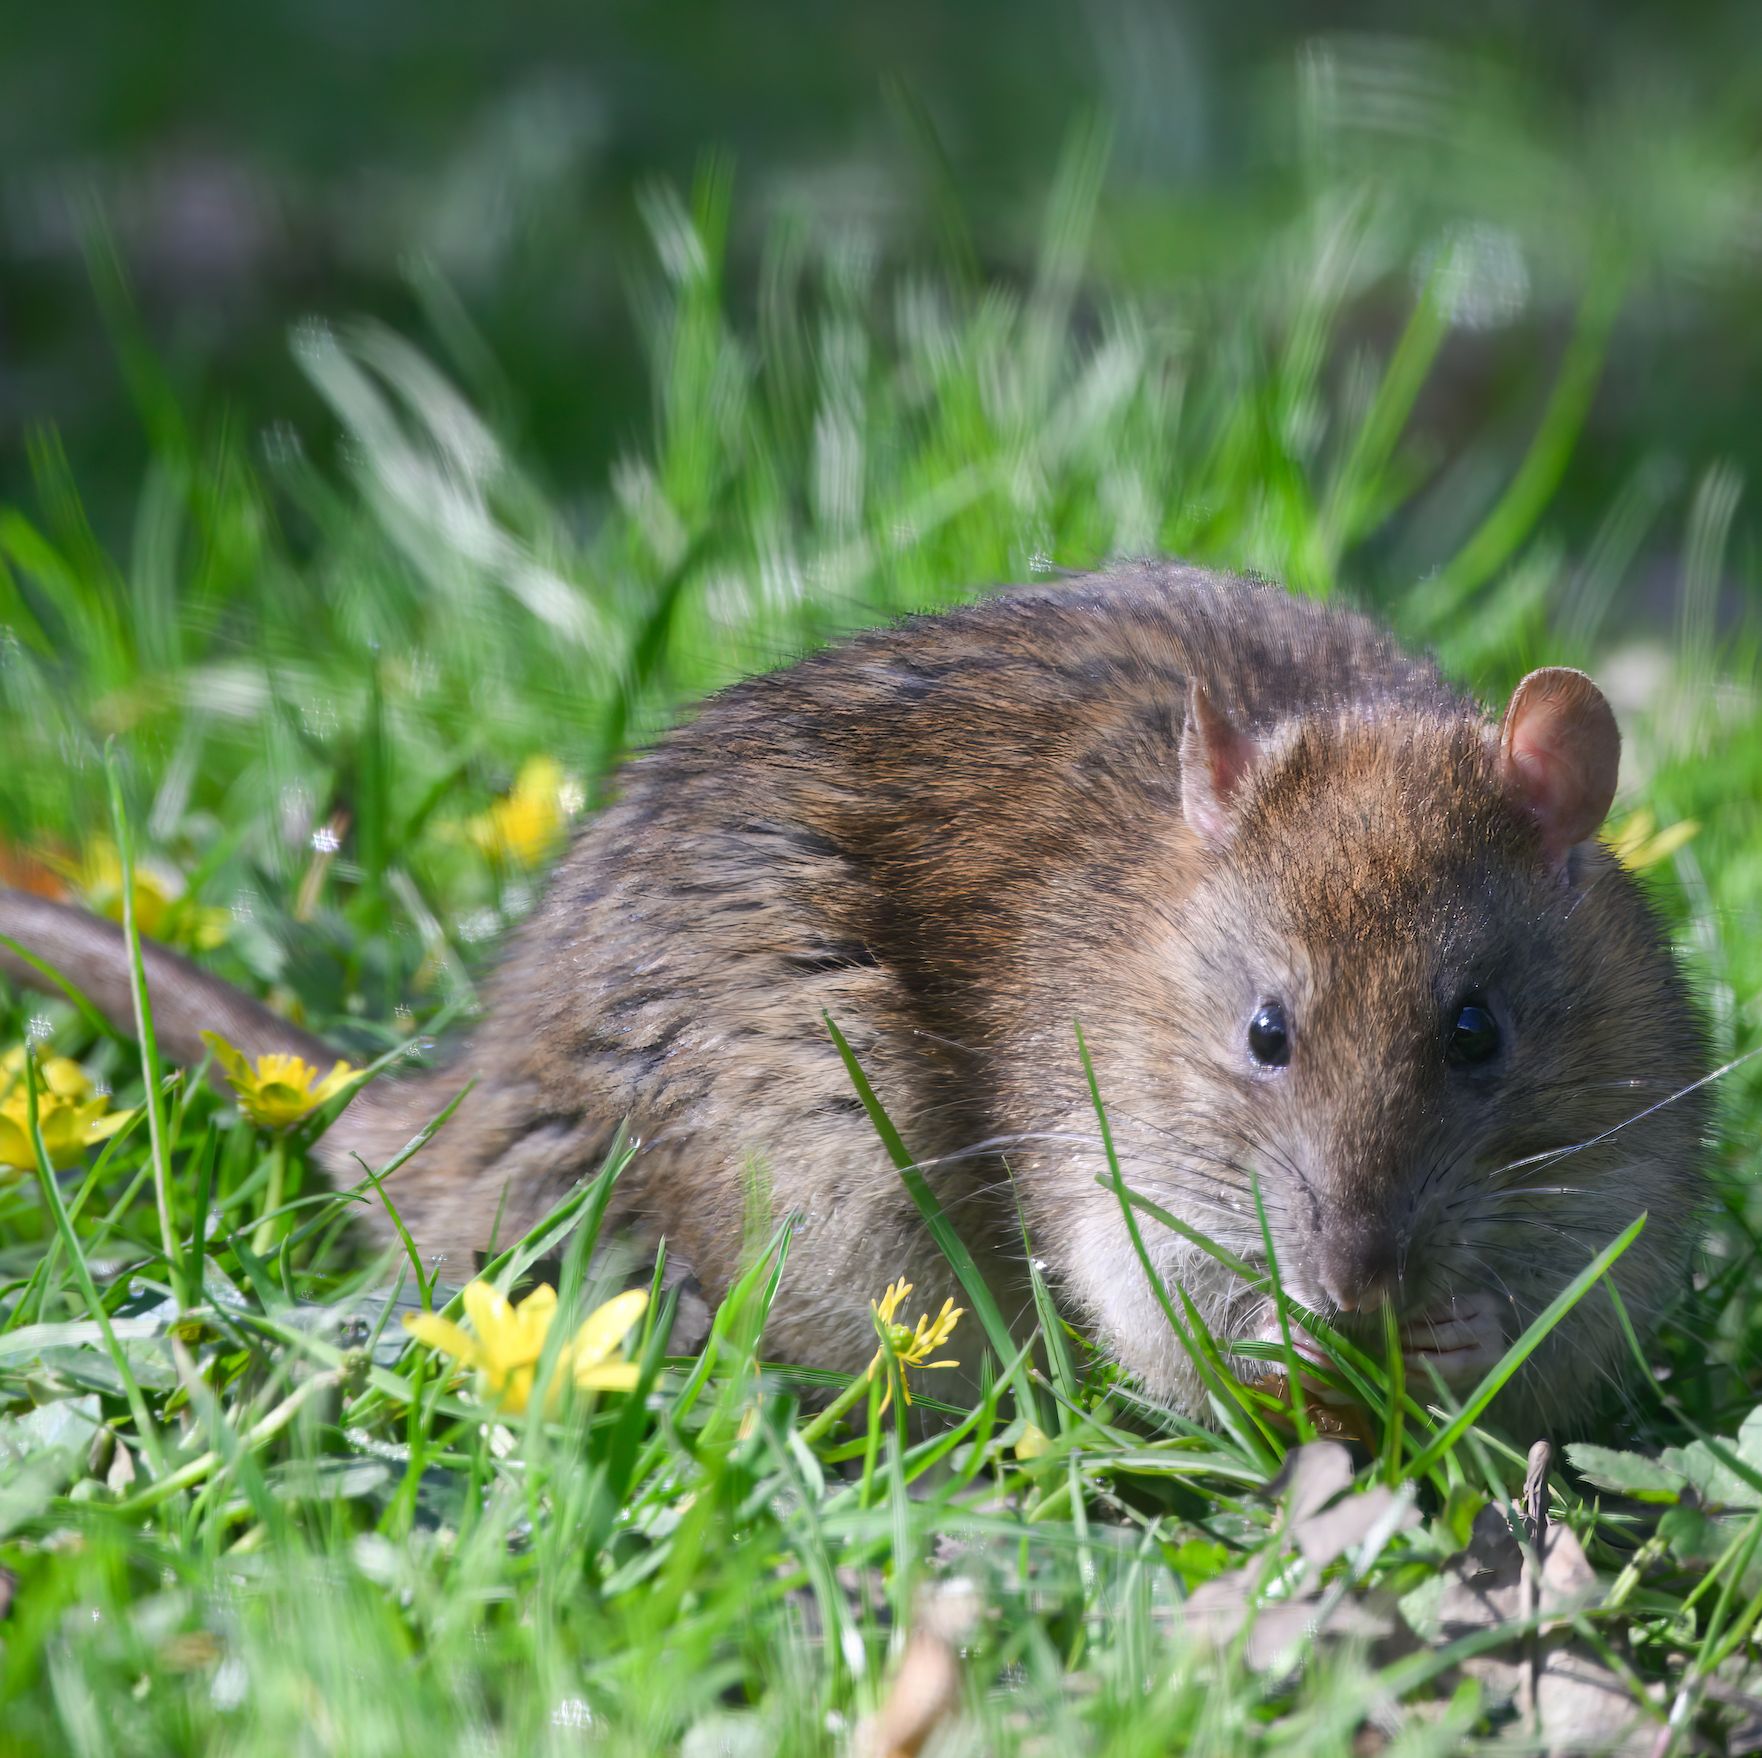 Garden Kitchen Mouse Trap Small Pest Catcher Humane Rat Traps